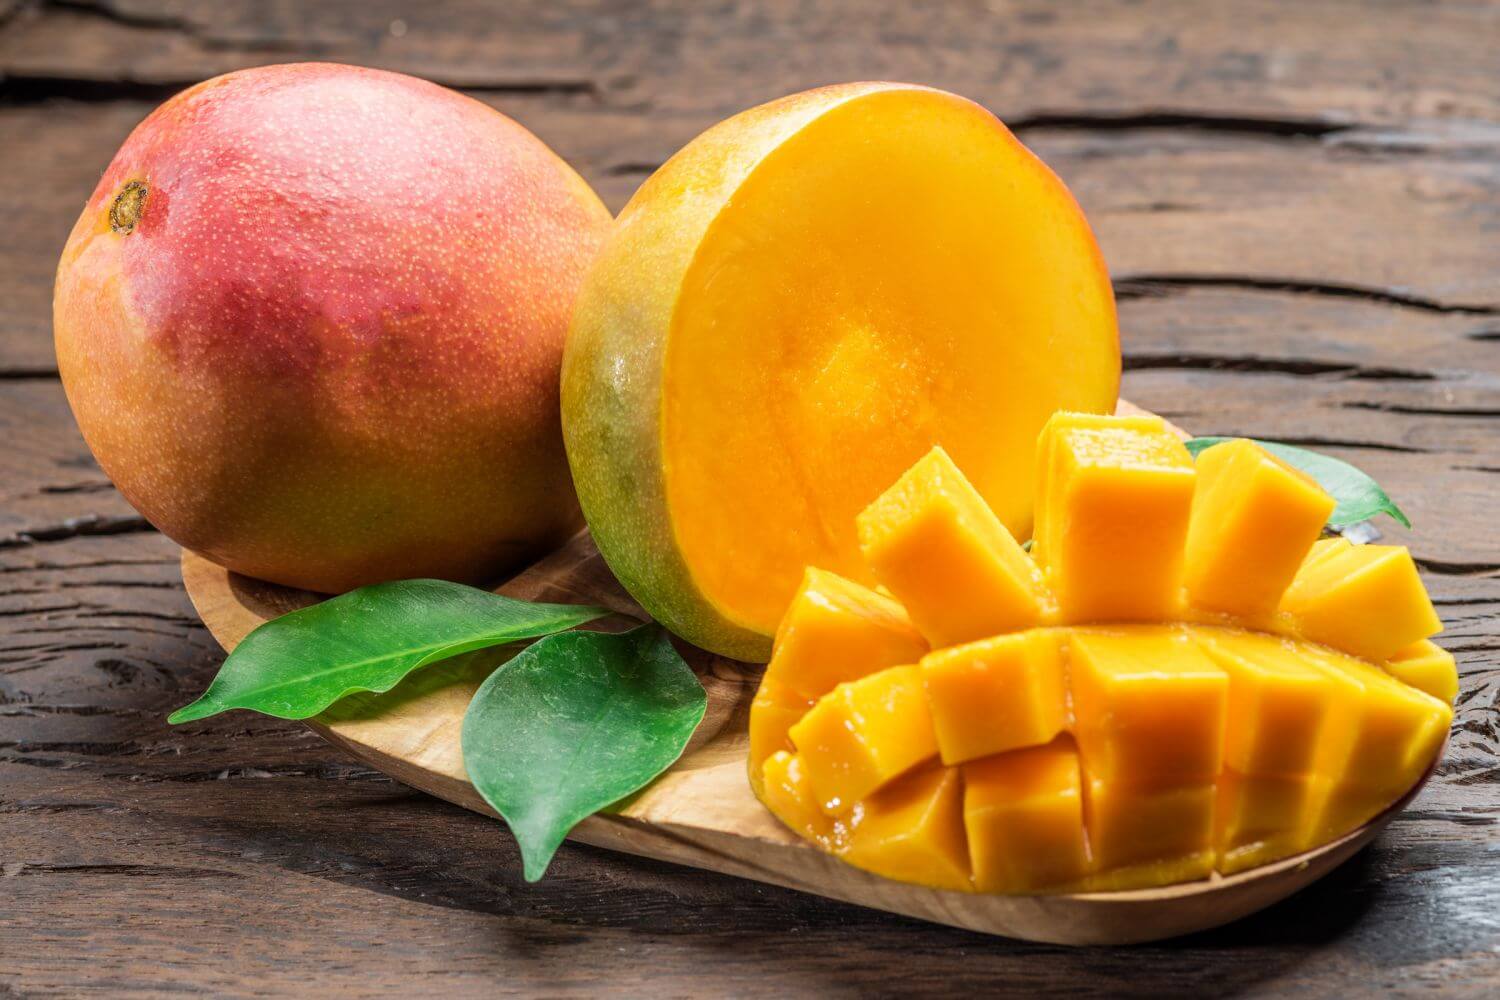 Как выглядит манго фото фрукт